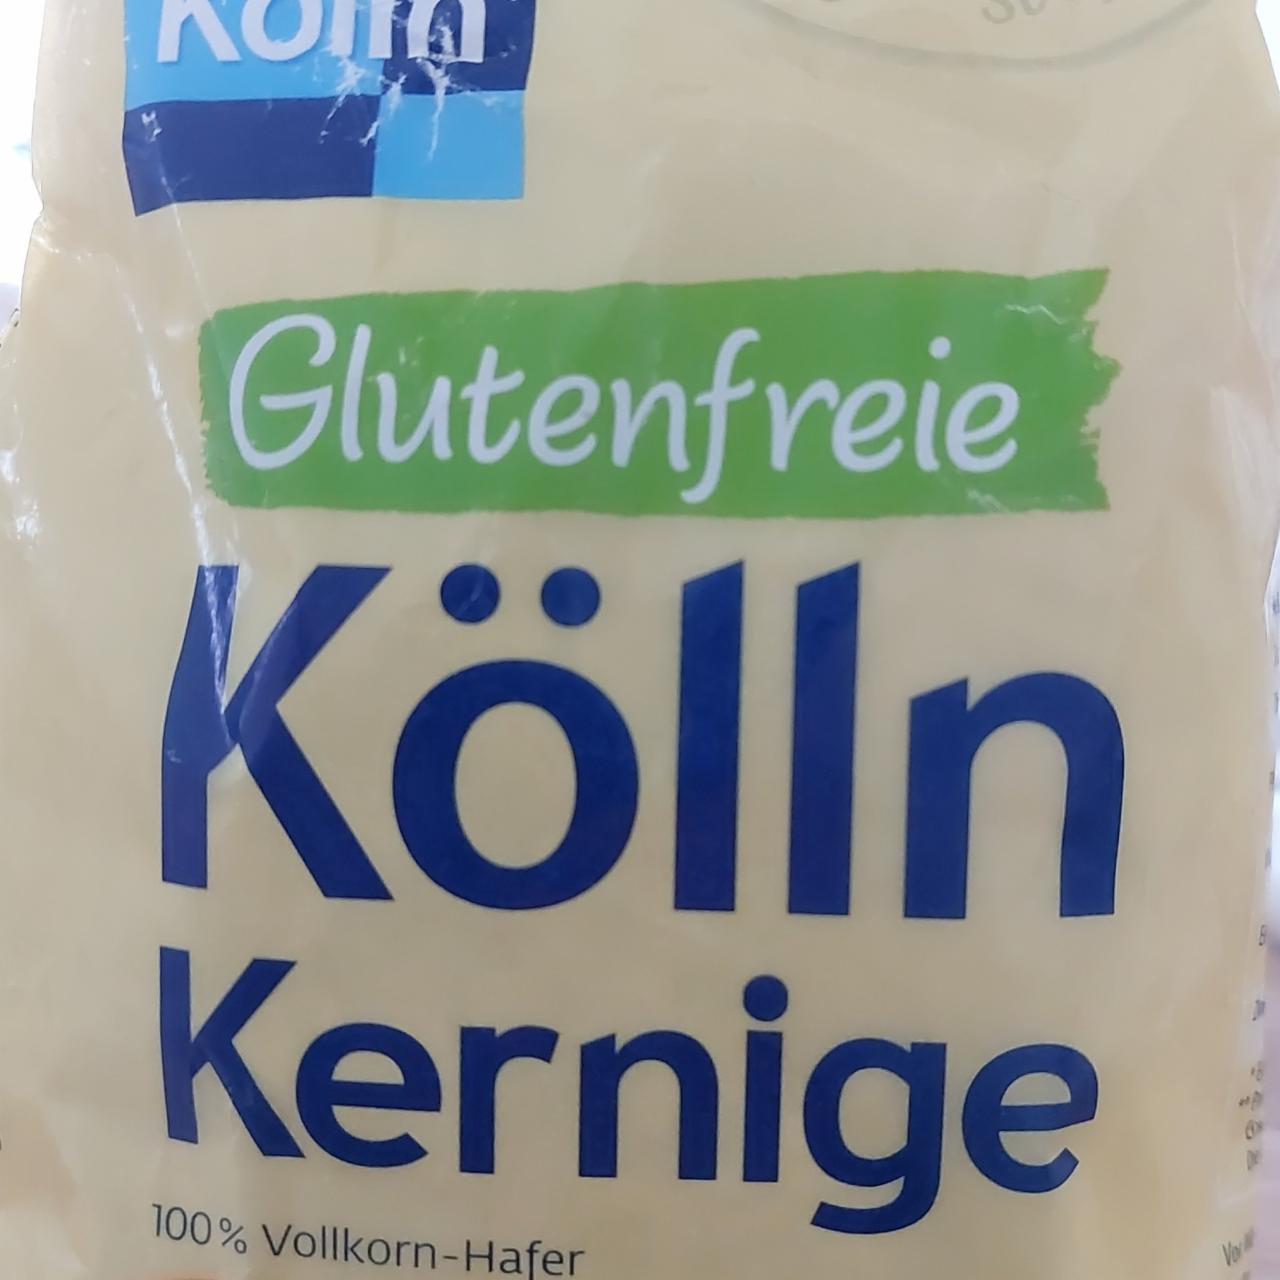 Fotografie - Kernige 100% Vollkorn-Hafer Glutenfreie Kölln